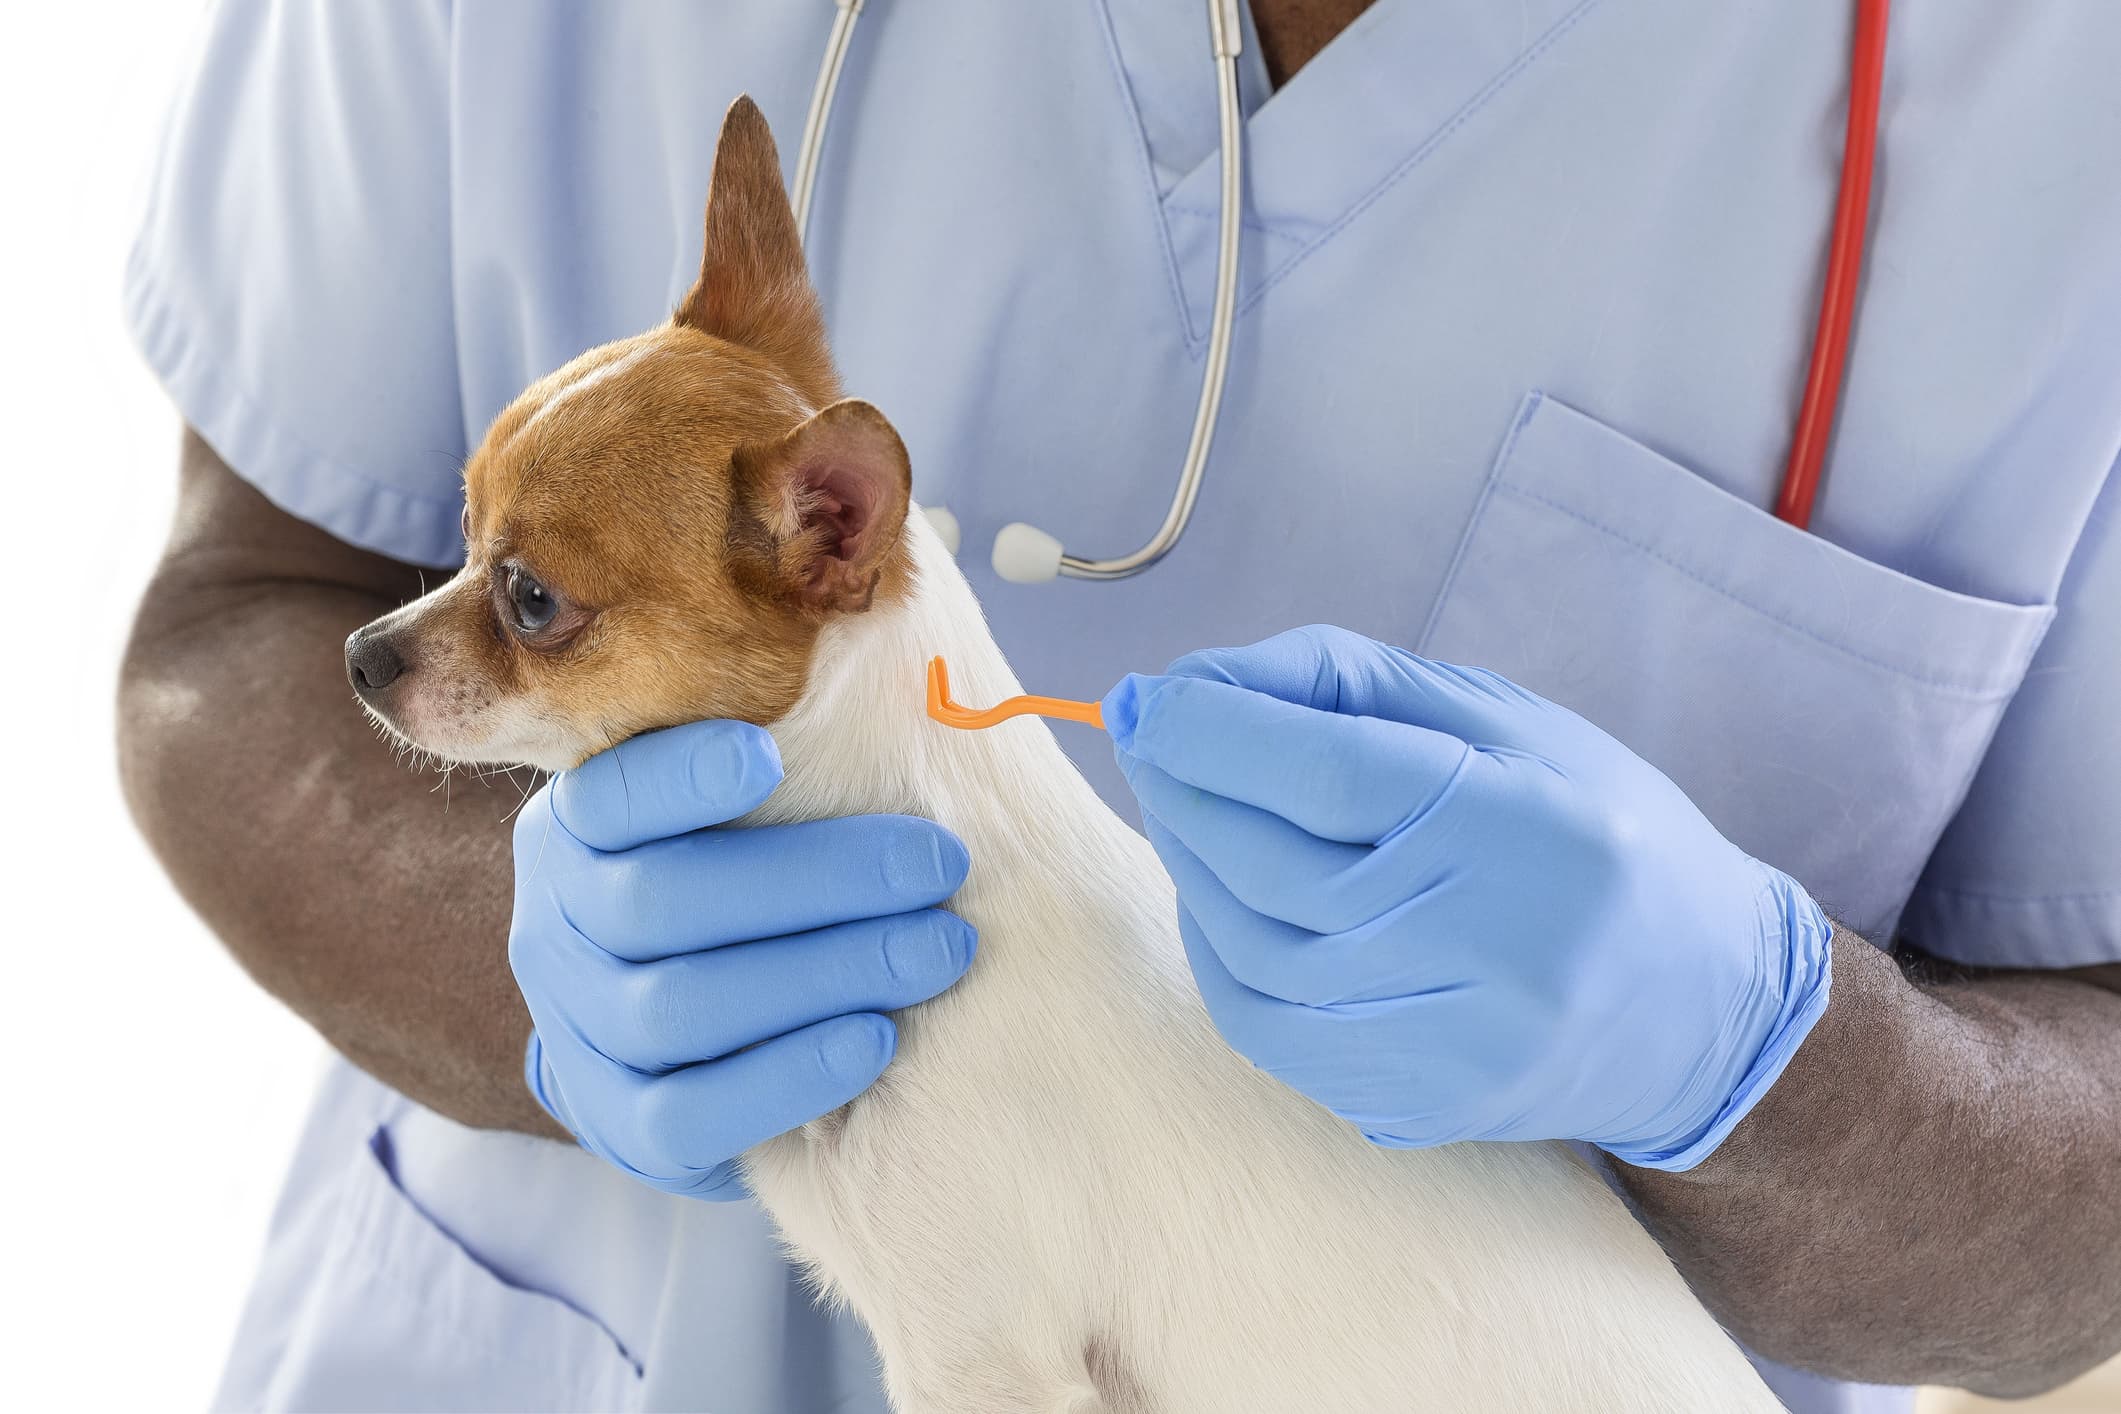 Um cão da raça chihuahua sendo examinado por um veterinário negro usando uniforme e luvas na cor azul.